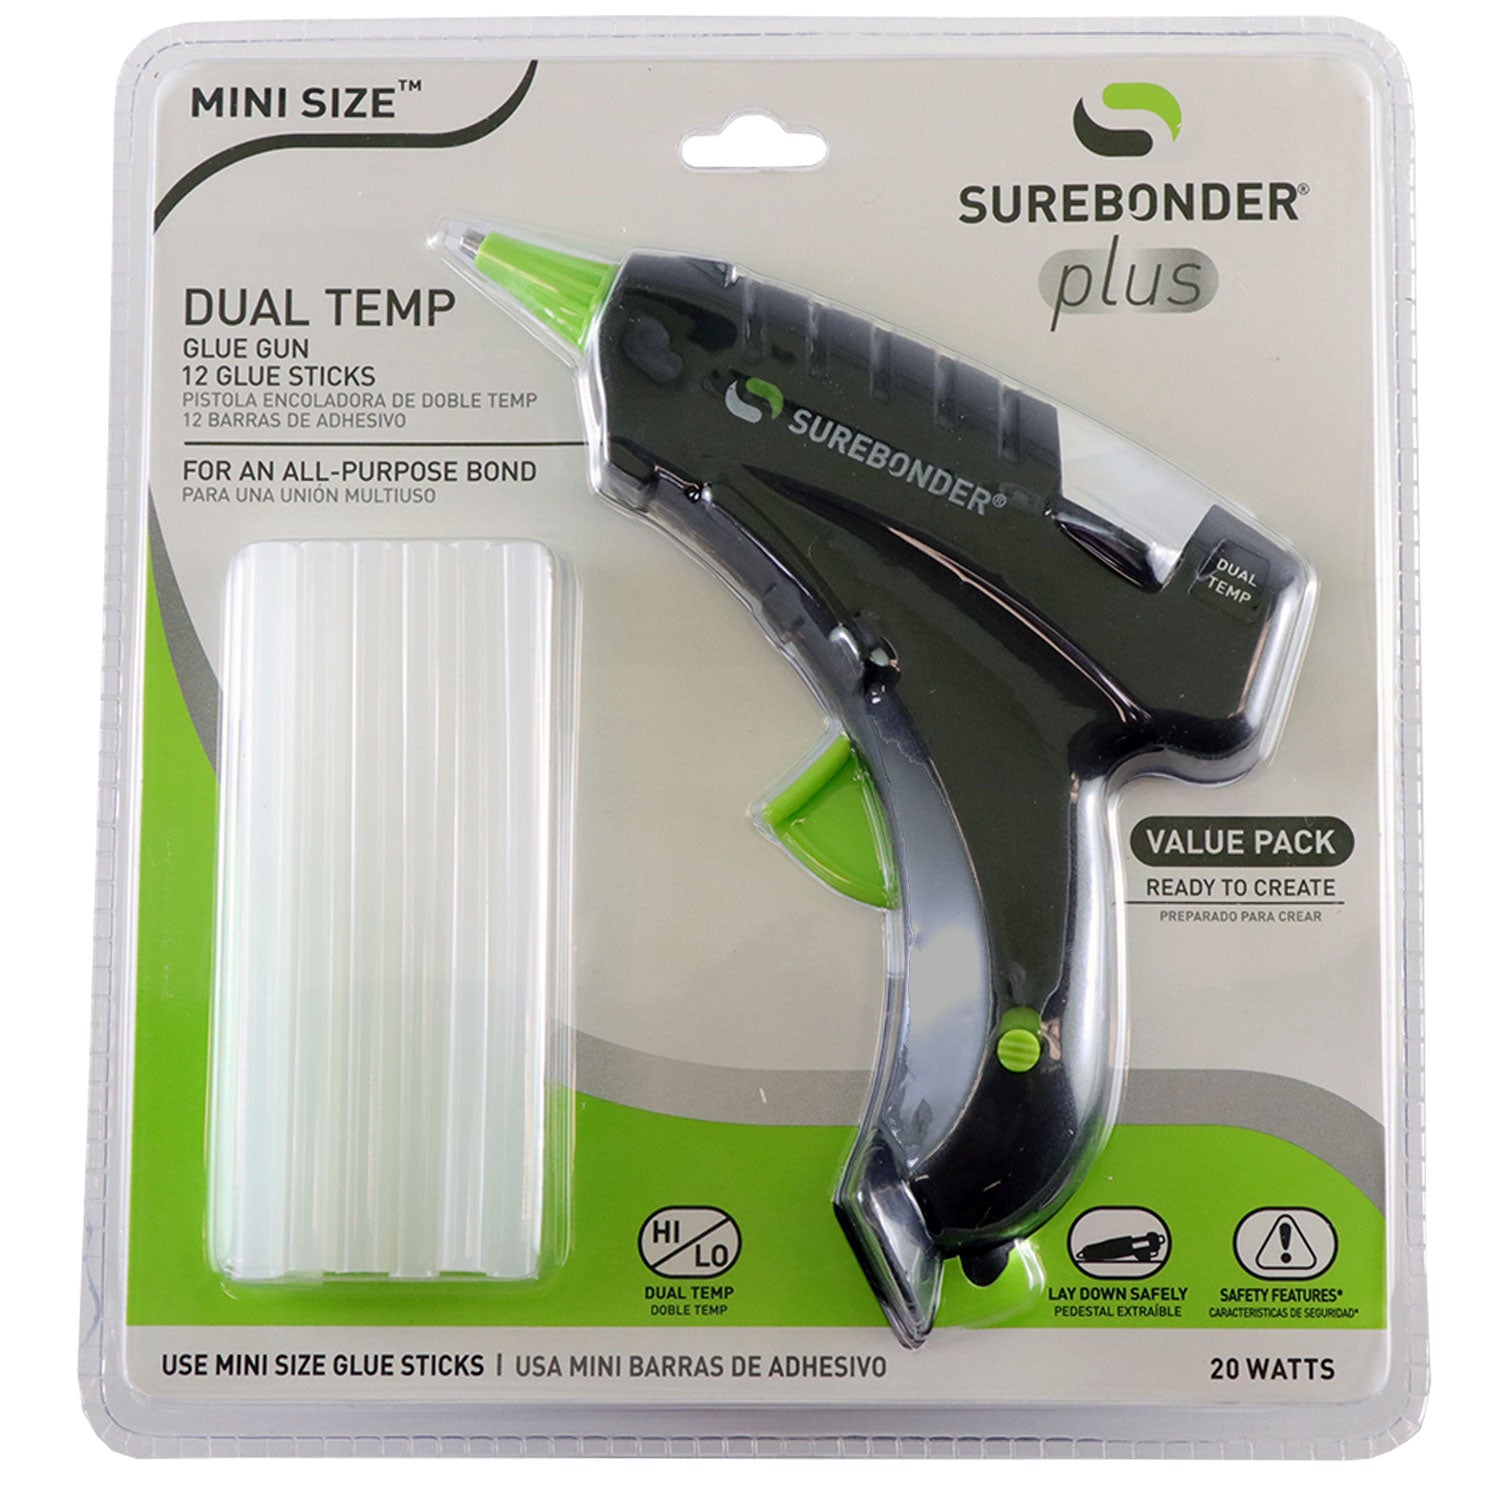 Dual temp Glue Guns at